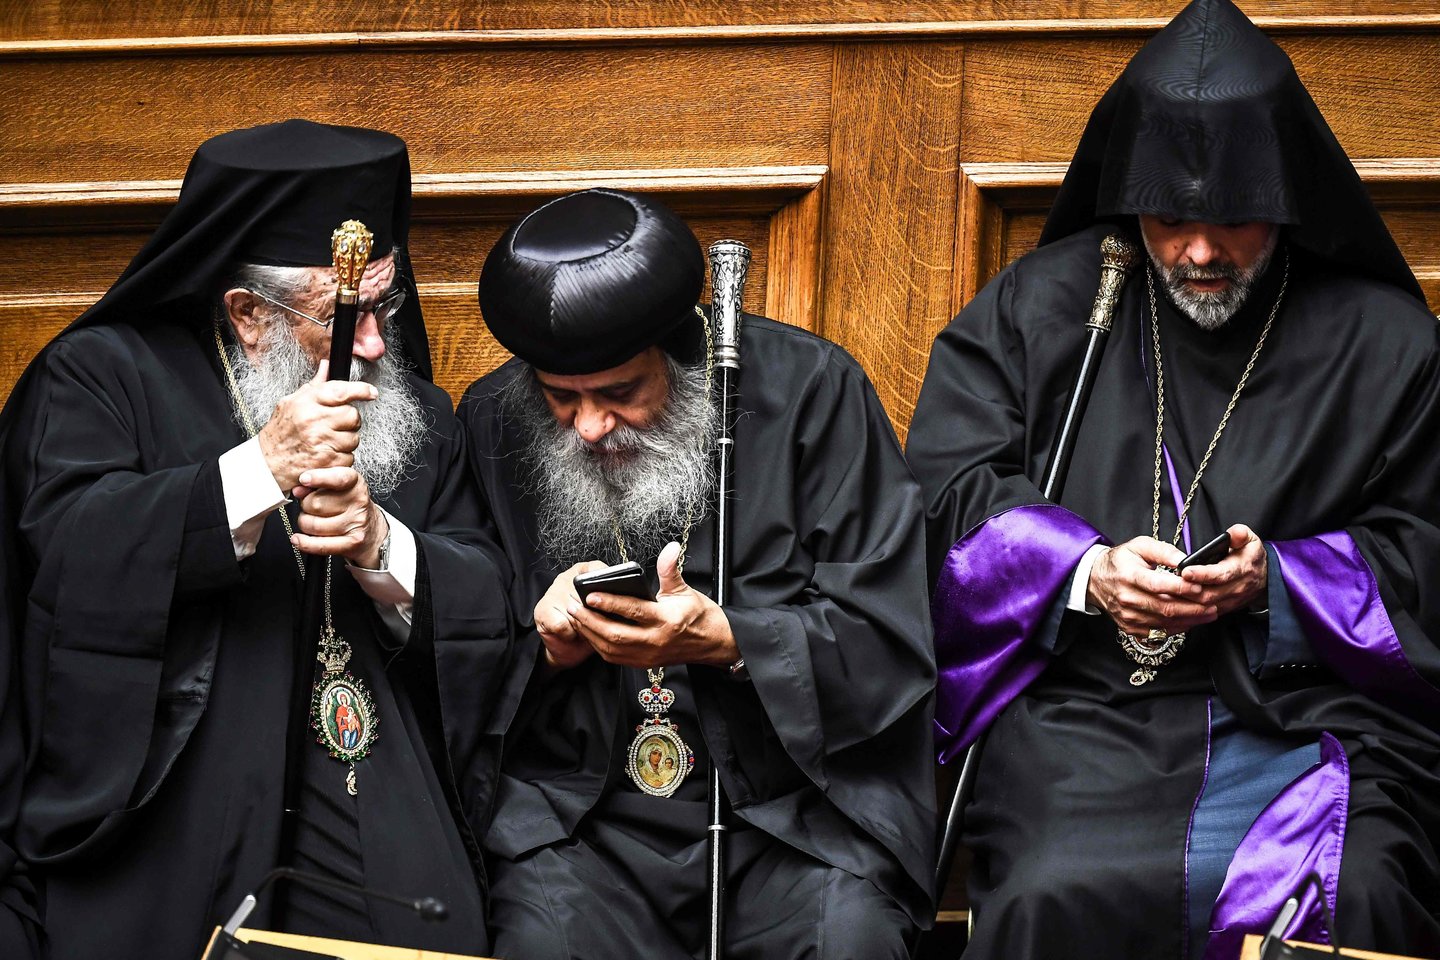  Prieštaringai vertinamas graikų ortodoksų vyskupas, pripažintas kaltu kurstęs smurtauti prieš homoseksualius asmenis, pranešė po keturių dešimtmečių tarnystės paliekantis postą.<br> AFP/Scanpix nuotr.